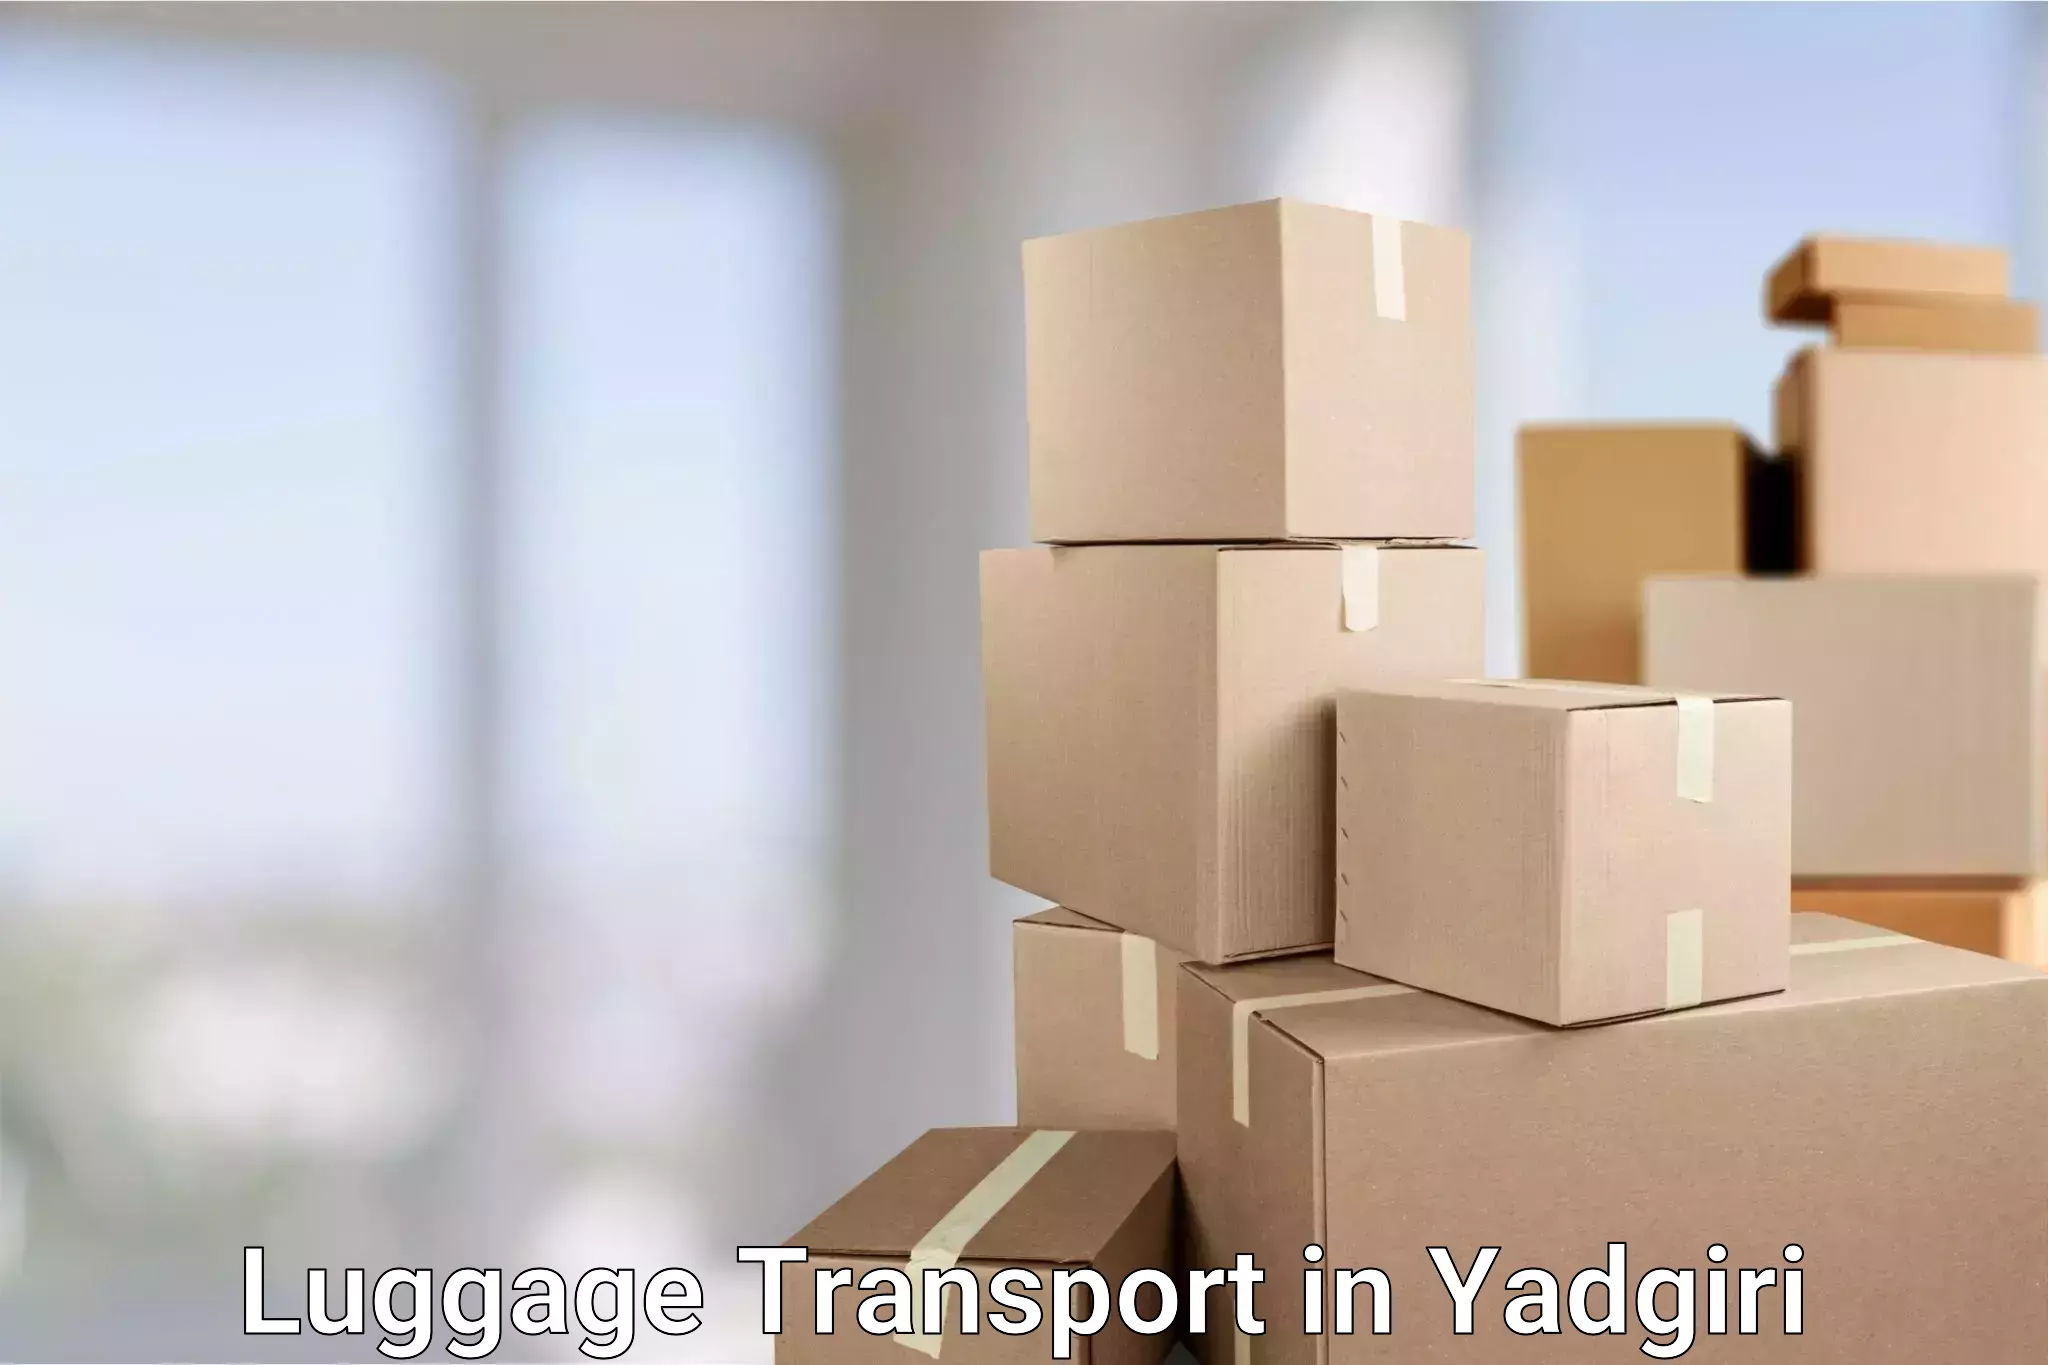 Hassle-free luggage shipping in Yadgiri